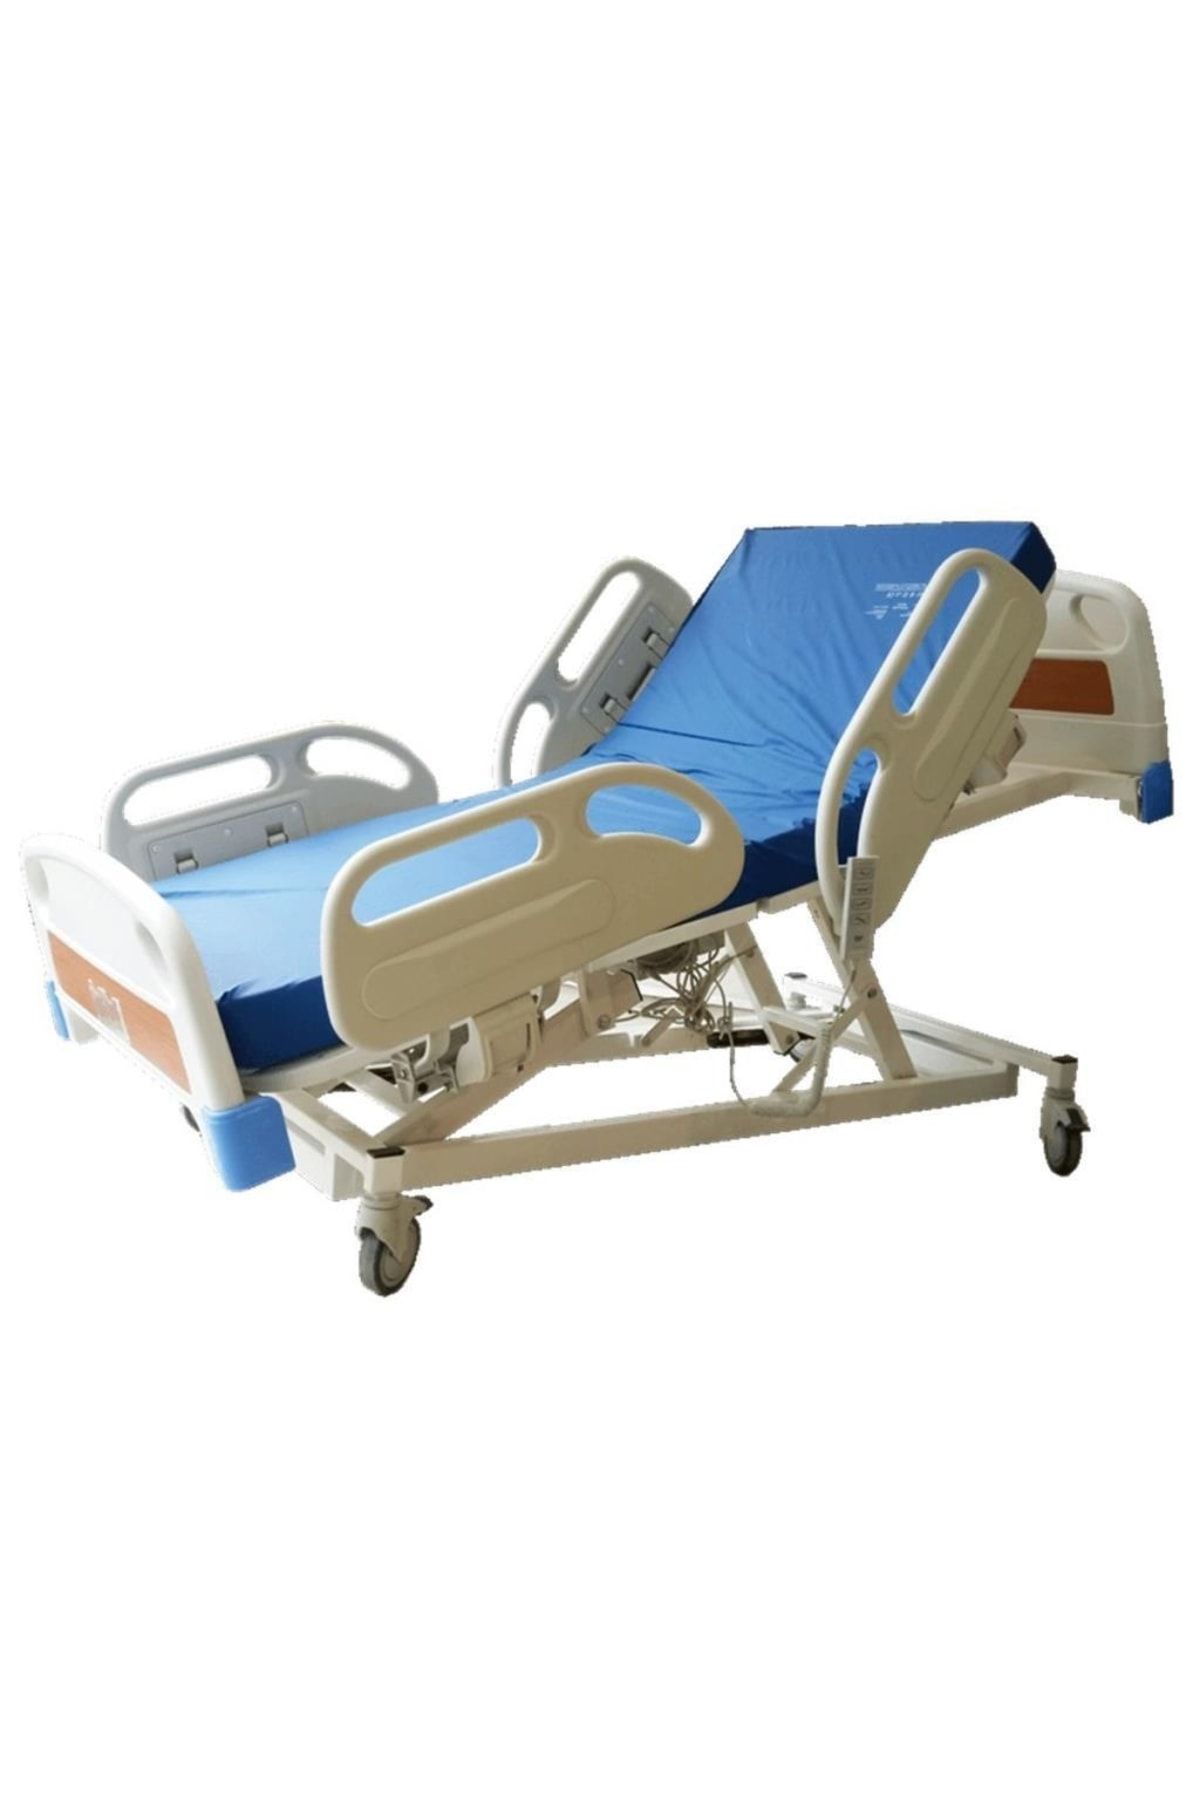 Medkimsan 4 Motorlu Hasta Karyolası | Full Abs Motorlu Hasta Yatağı | Hastane Tipi | Asansörlü Hasta Karyolası